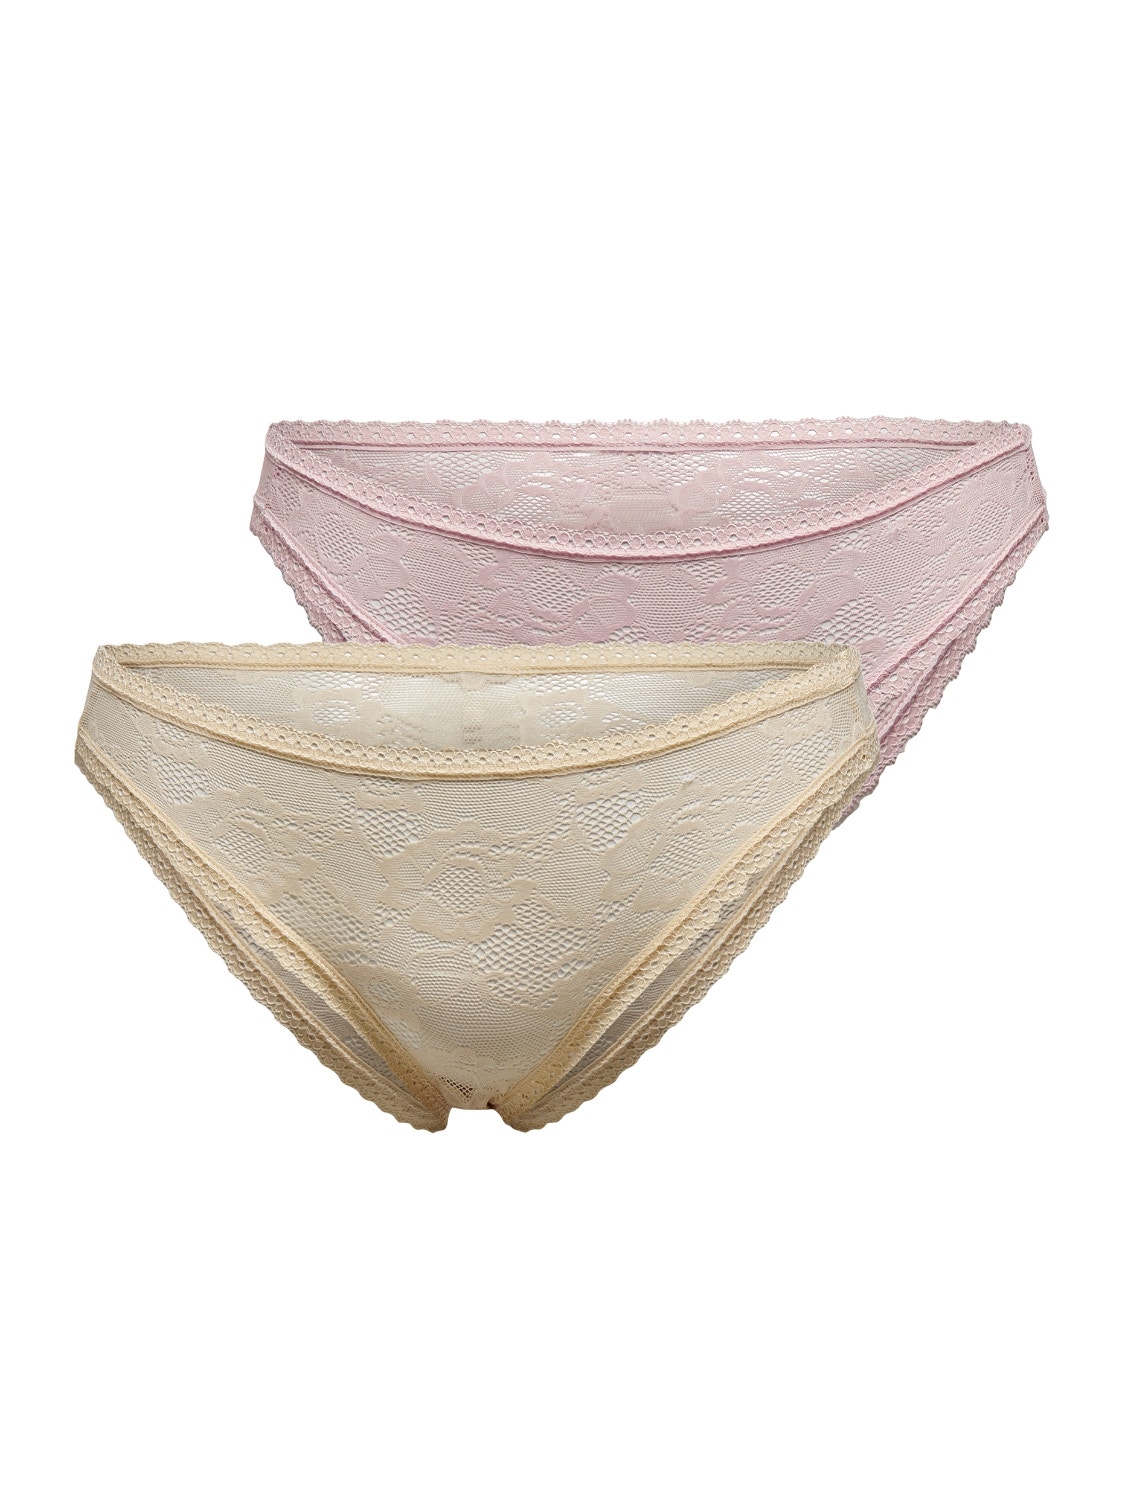 ONLY Underwear -Macadamia - 15249418